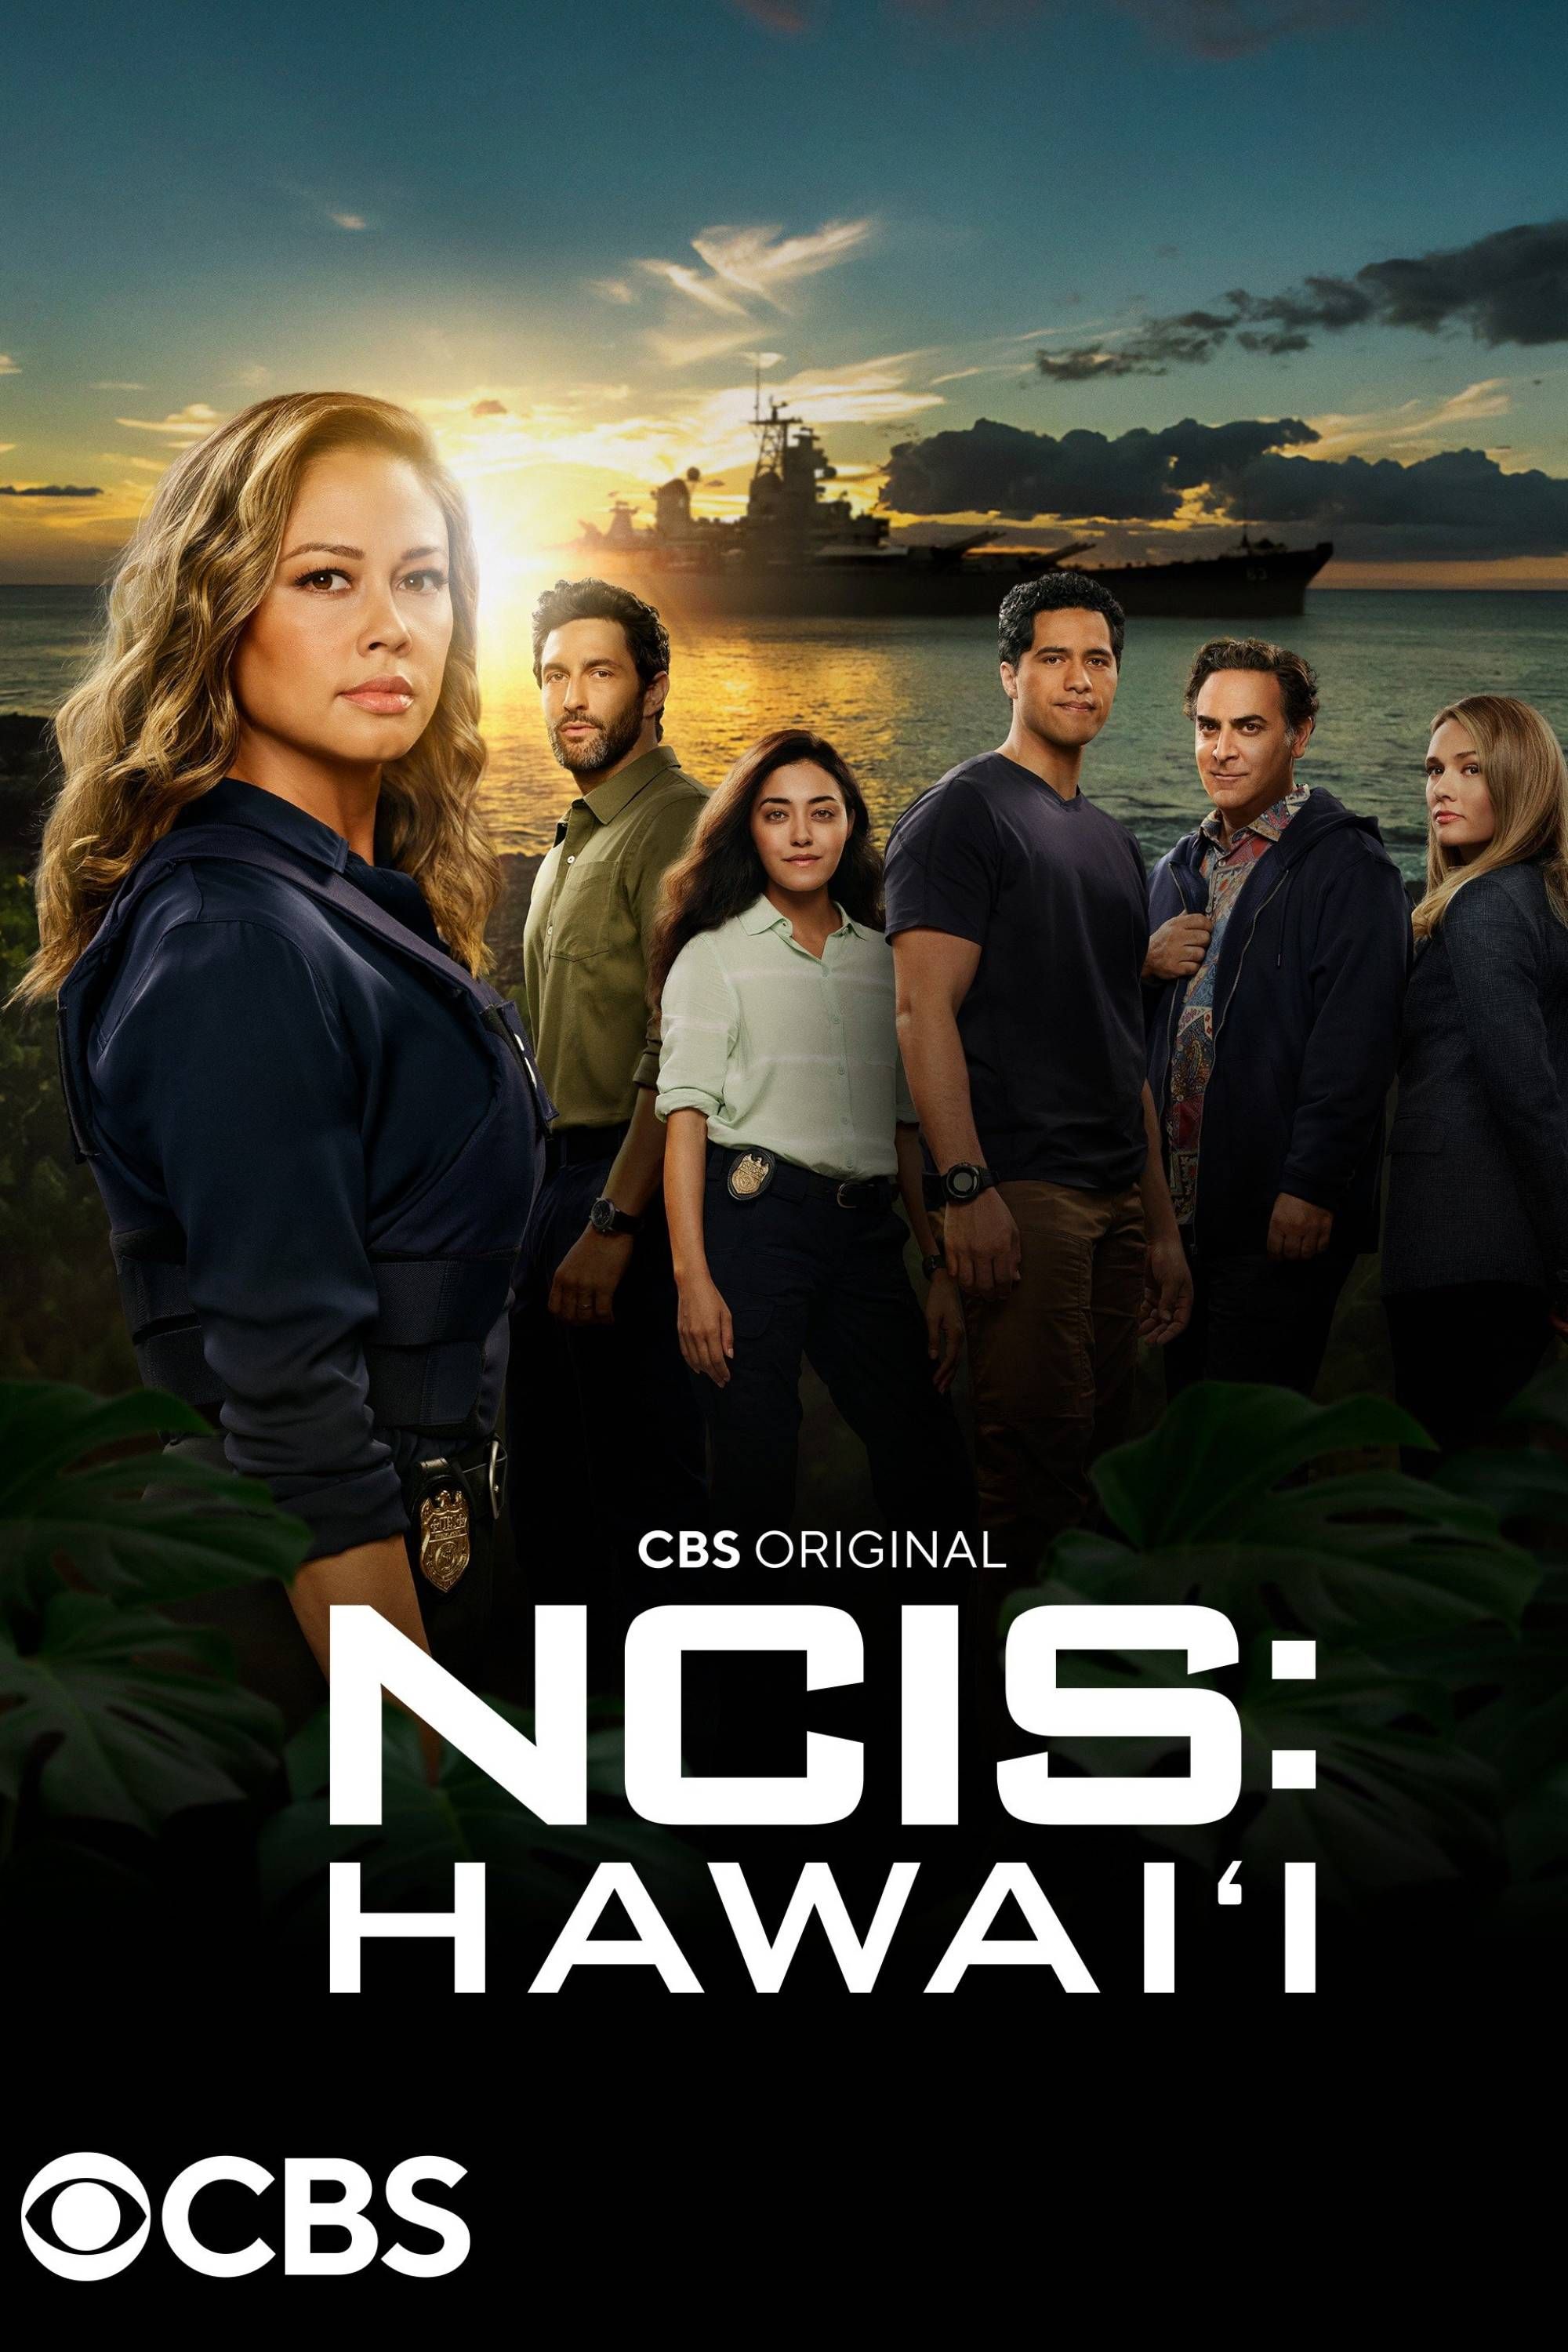 El elenco de NCIS: Hawai'i posa frente a la playa encima del título del programa